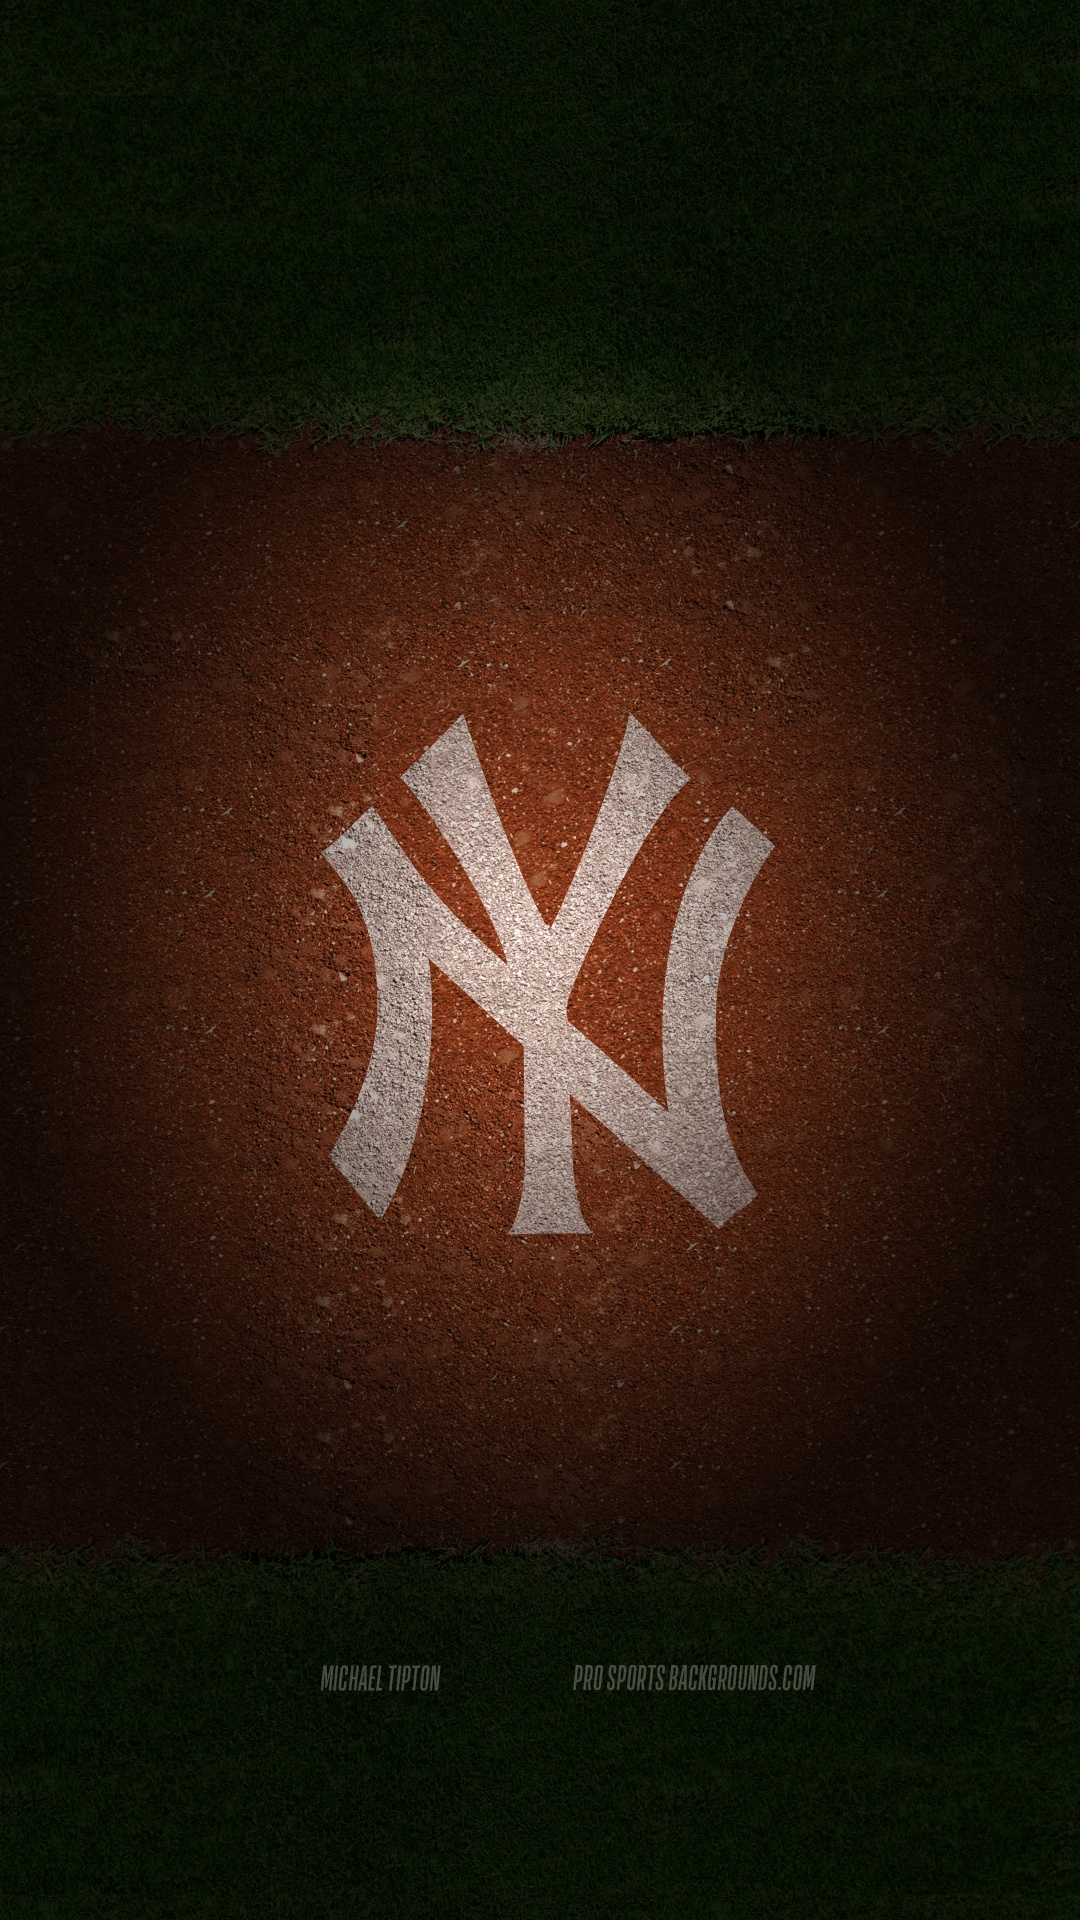 Yankees Wallpaper Images